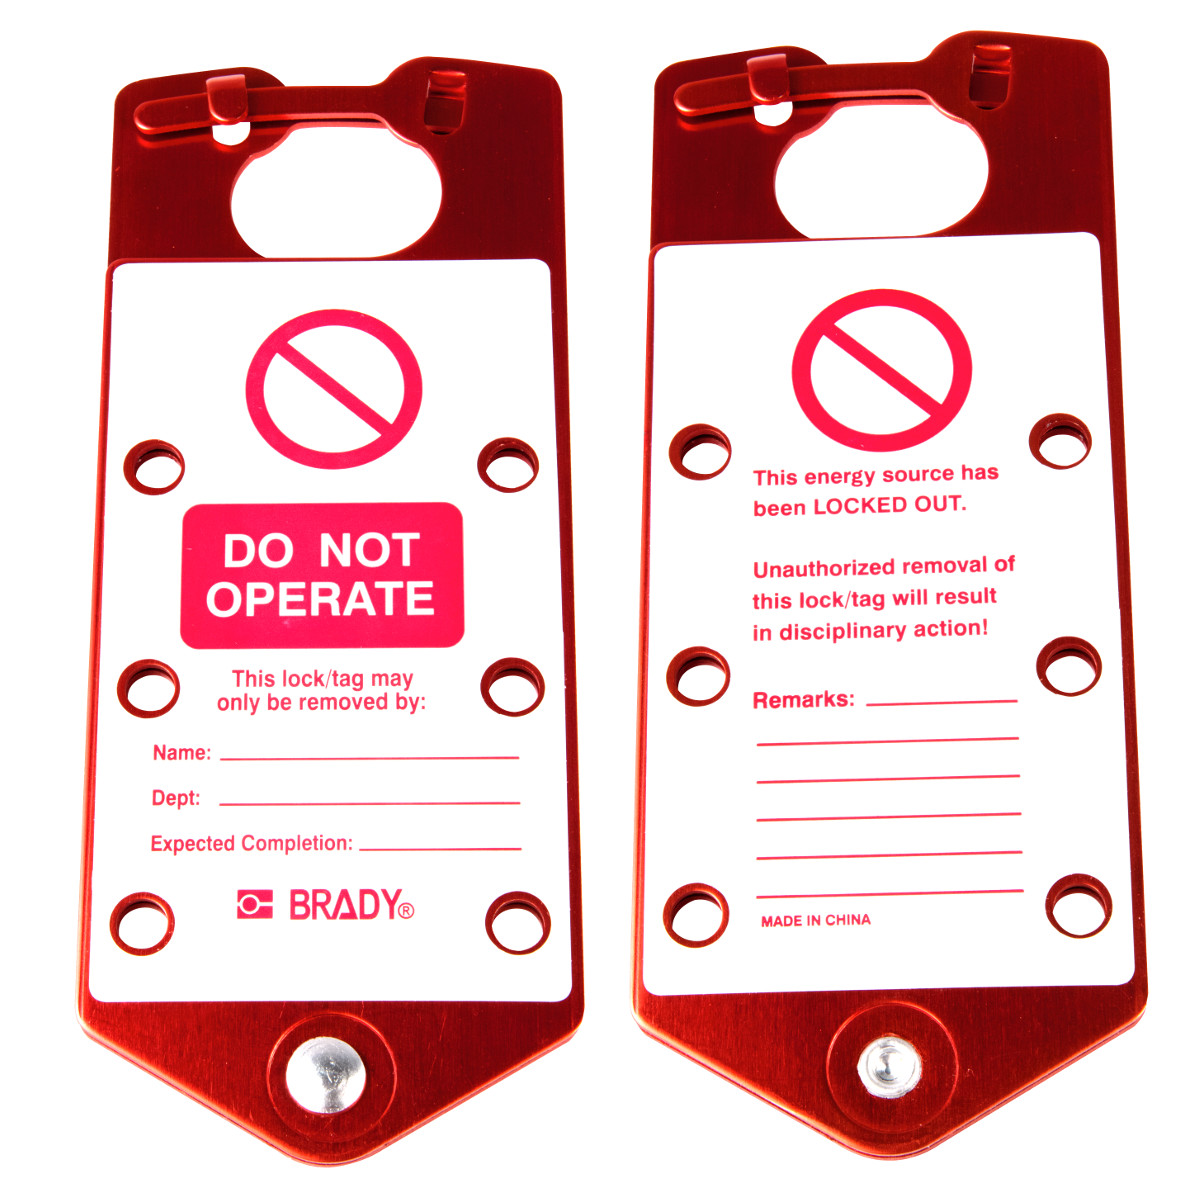 BRADY Beschriftbare Sicherheits - Blockierbügel ENG "Do not operate" DO NOT OPERATE LOCKOUT HASP RED